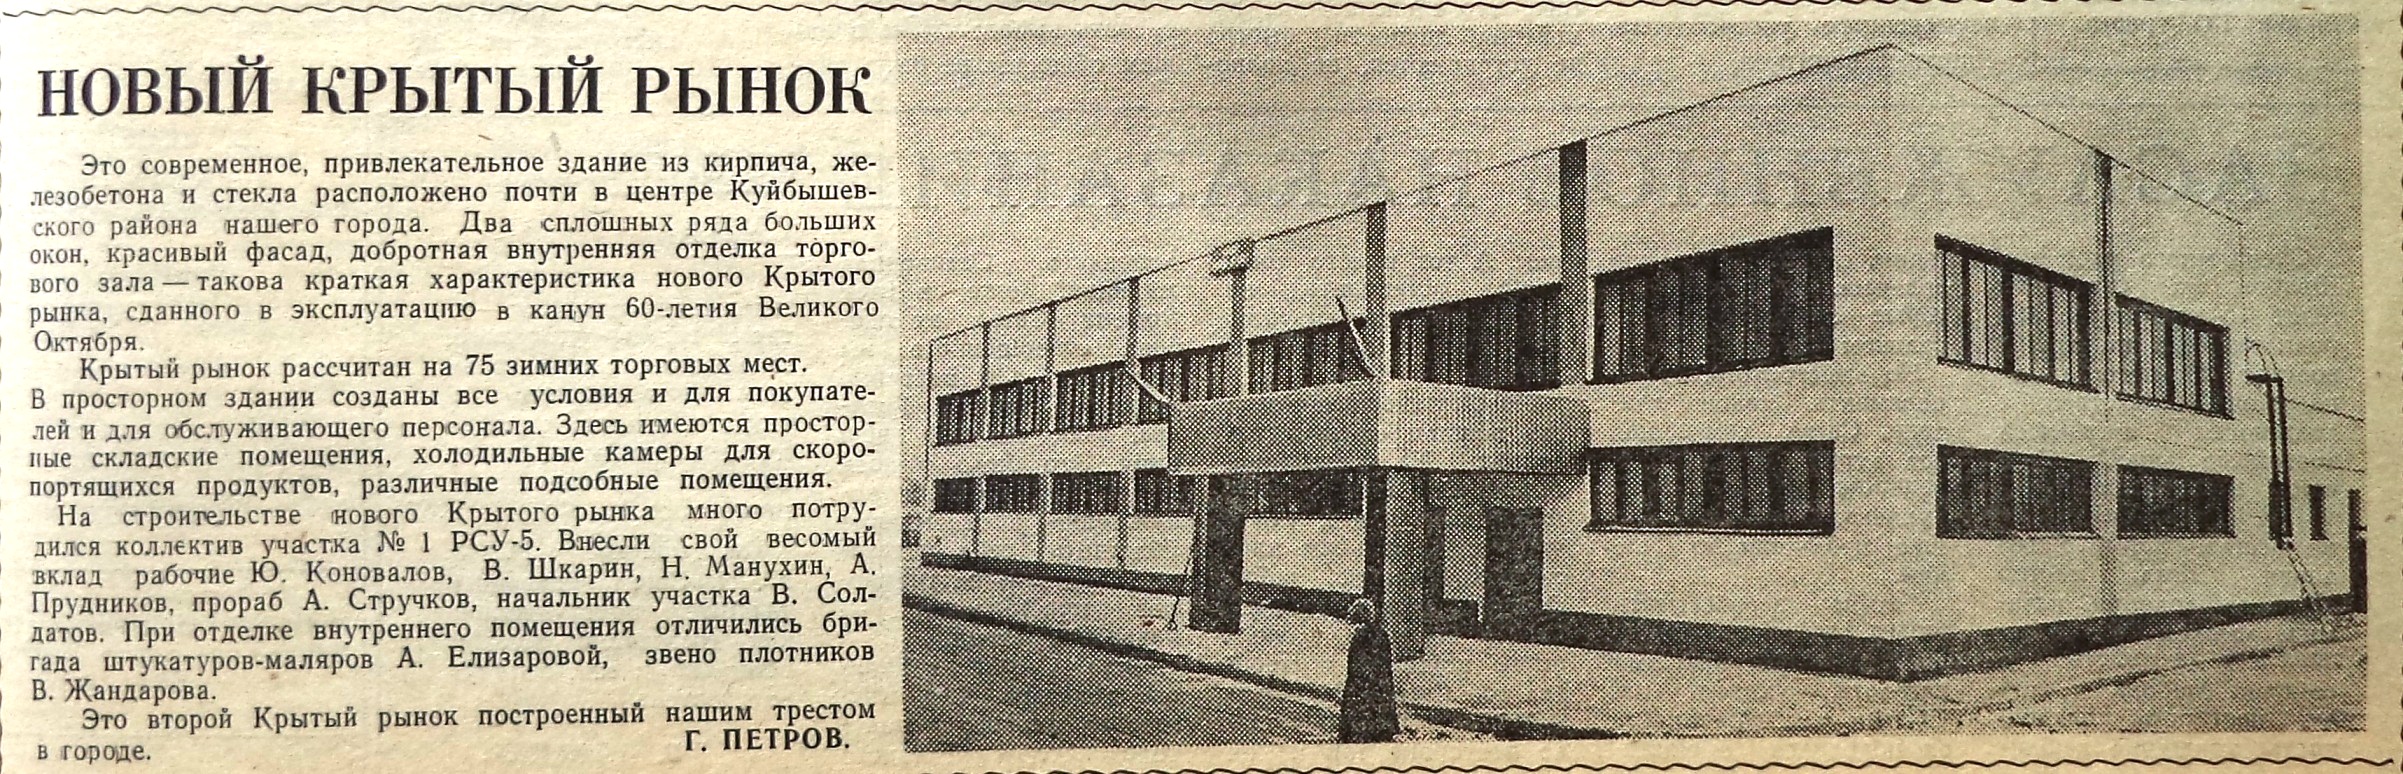 Пугачёвский-ФОТО-26-Голос Строителя-1977-21 ноября